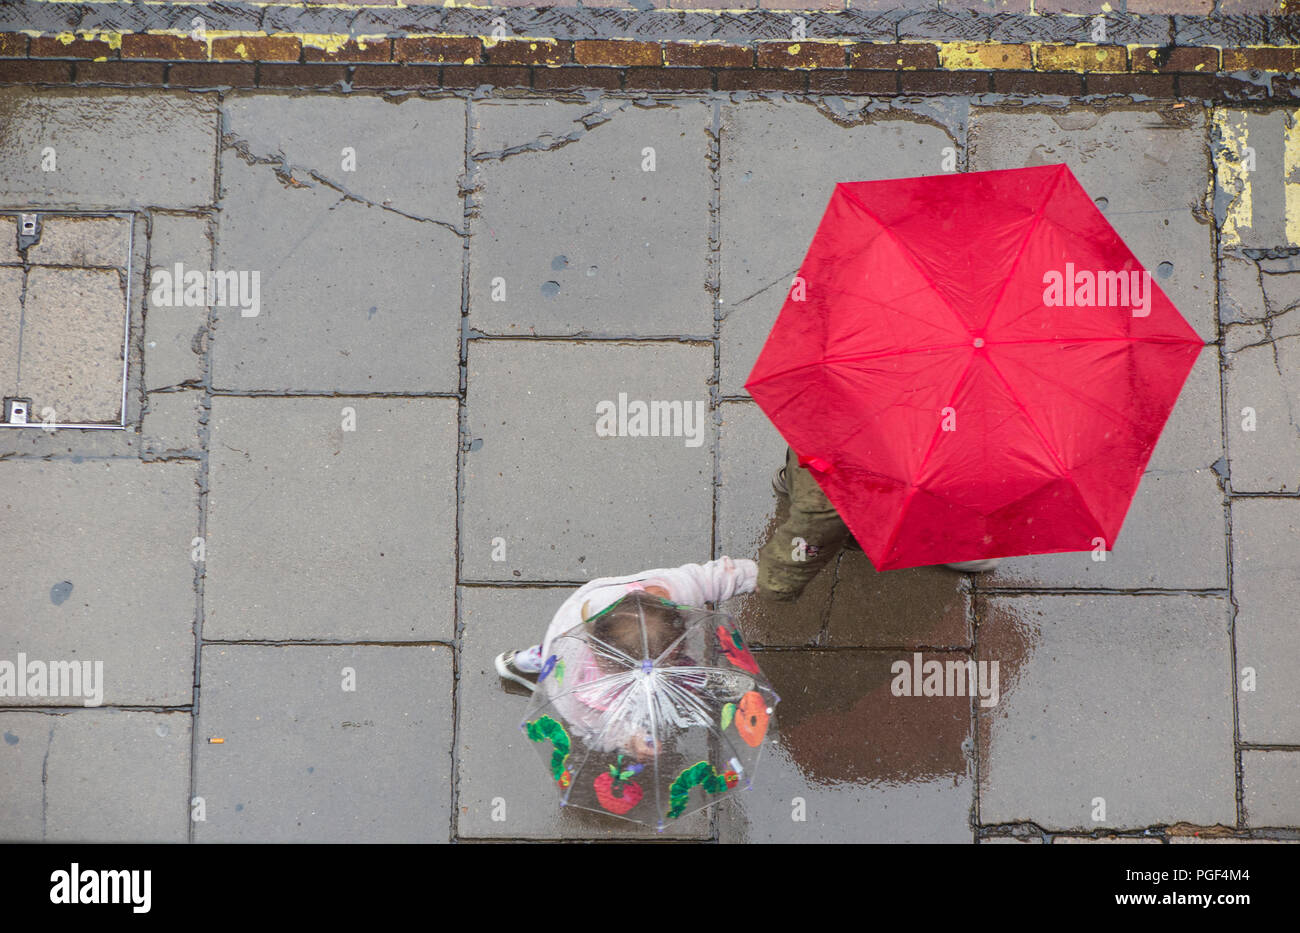 Regen- und Sonnenschirme werden angehoben, trocken auf einer Londoner Straße zu halten - eine Mutter und Kind Hände mit einem Regenschirm Stockfoto